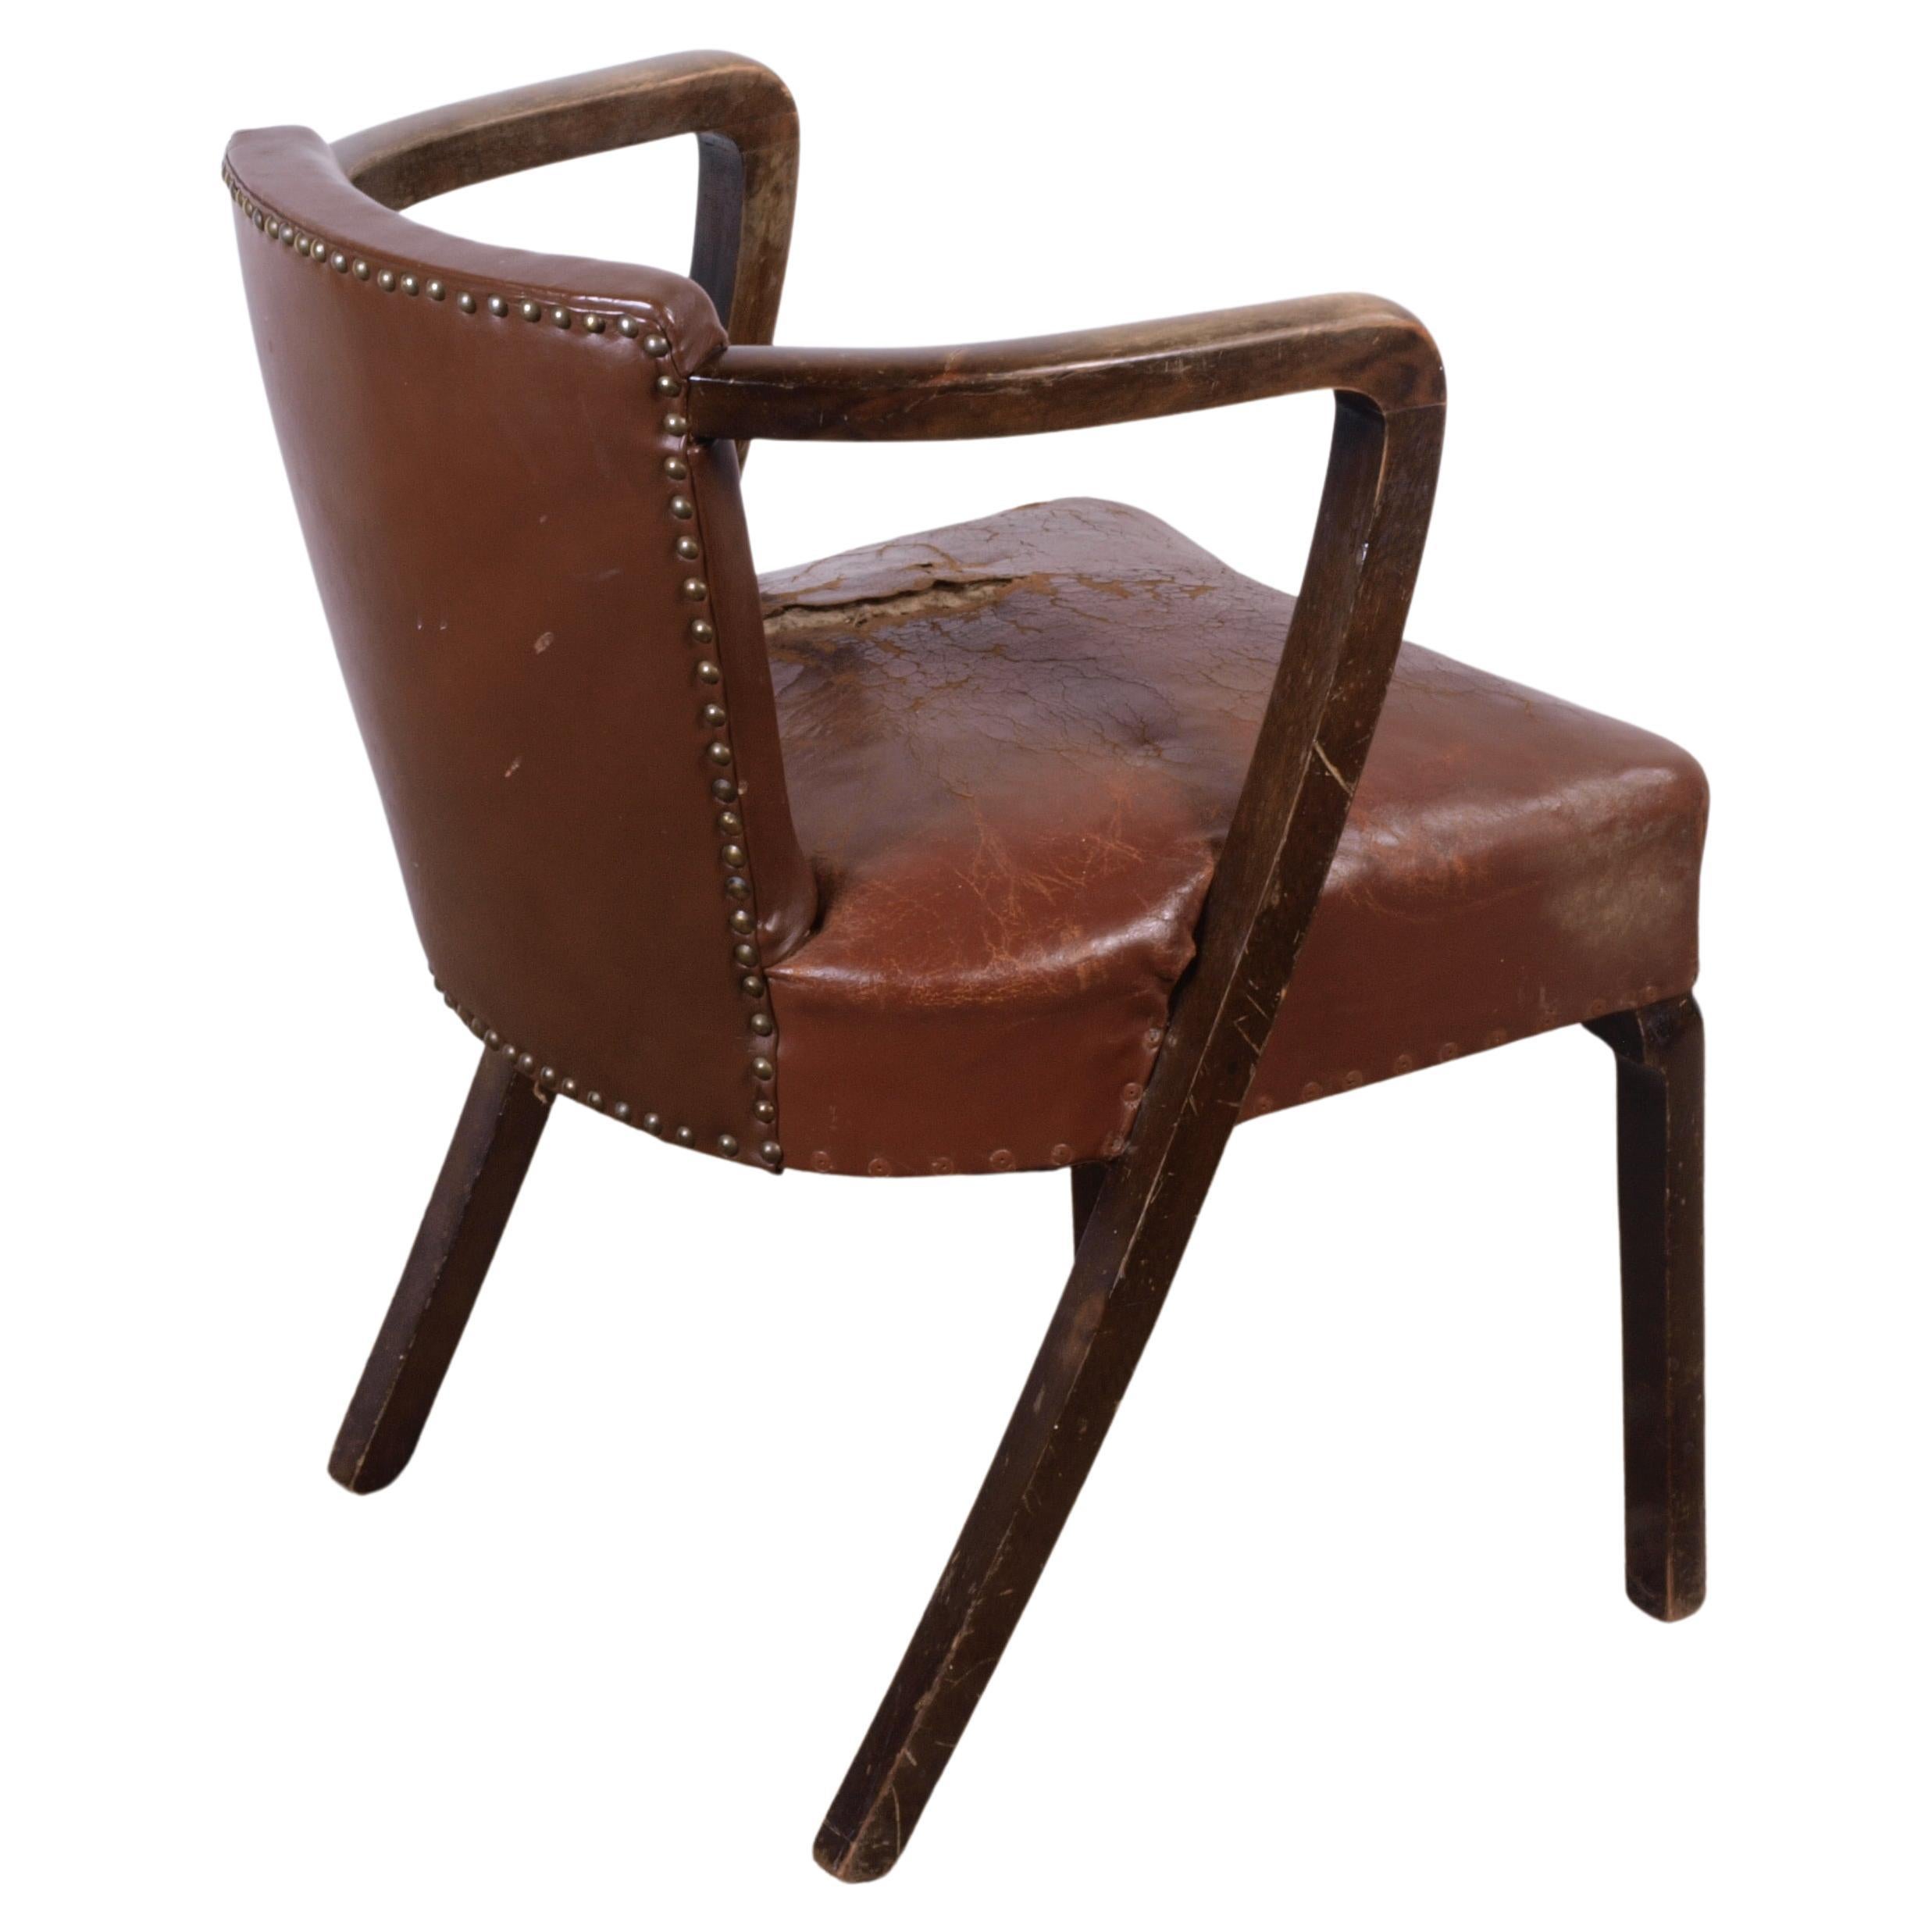 Old Unknown designer arm chair